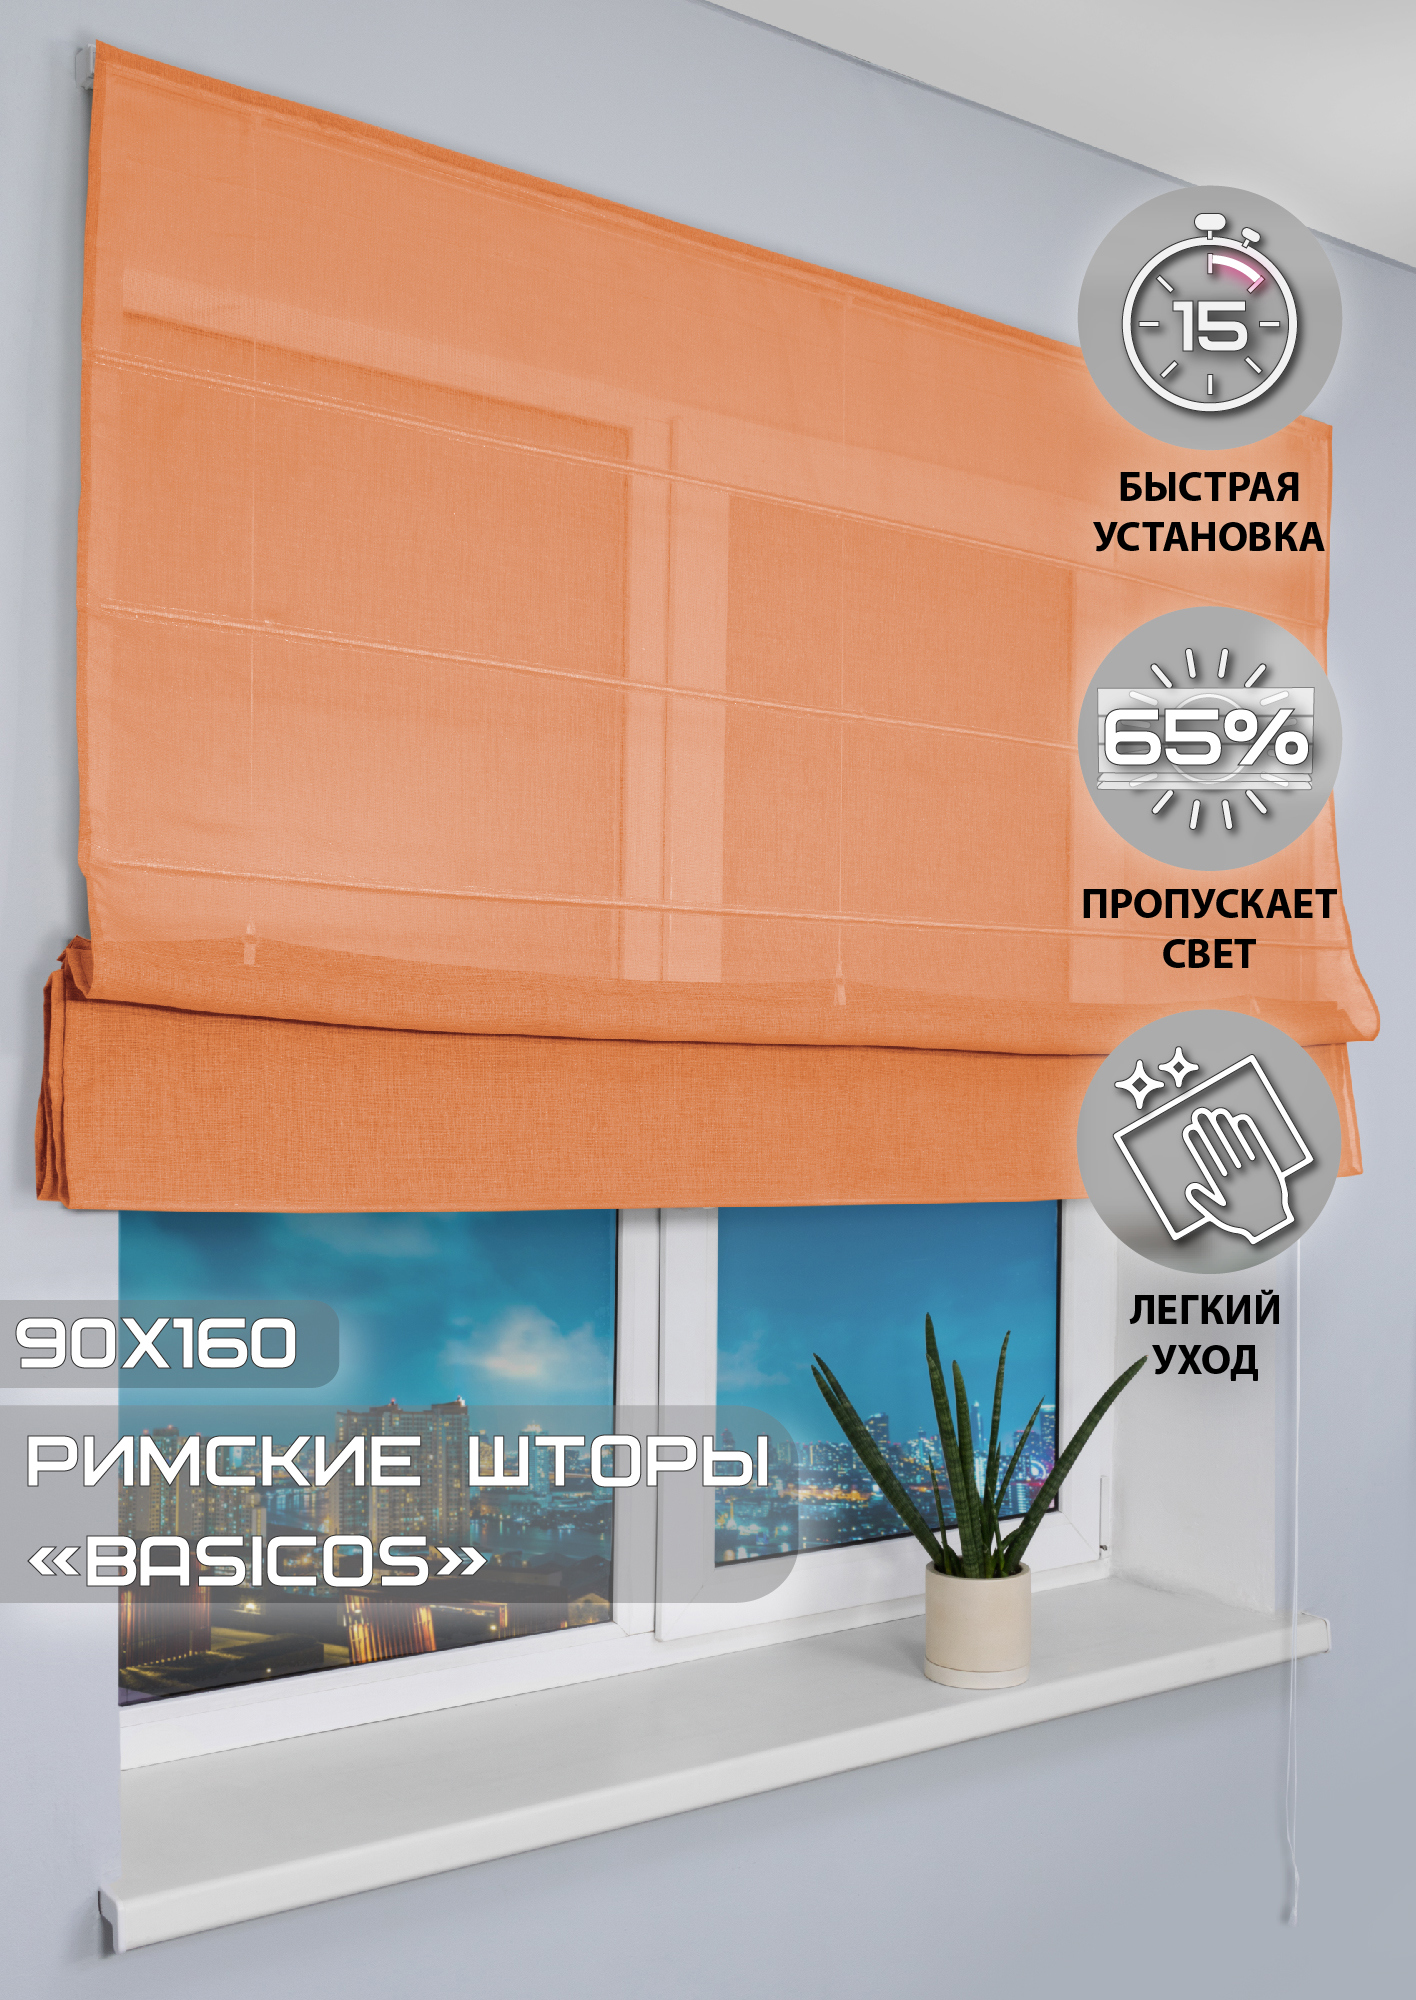 91002968 Римская штора "Basicos" 160x90 см цвет оранжевый STLM-0434237 ЭСКАР